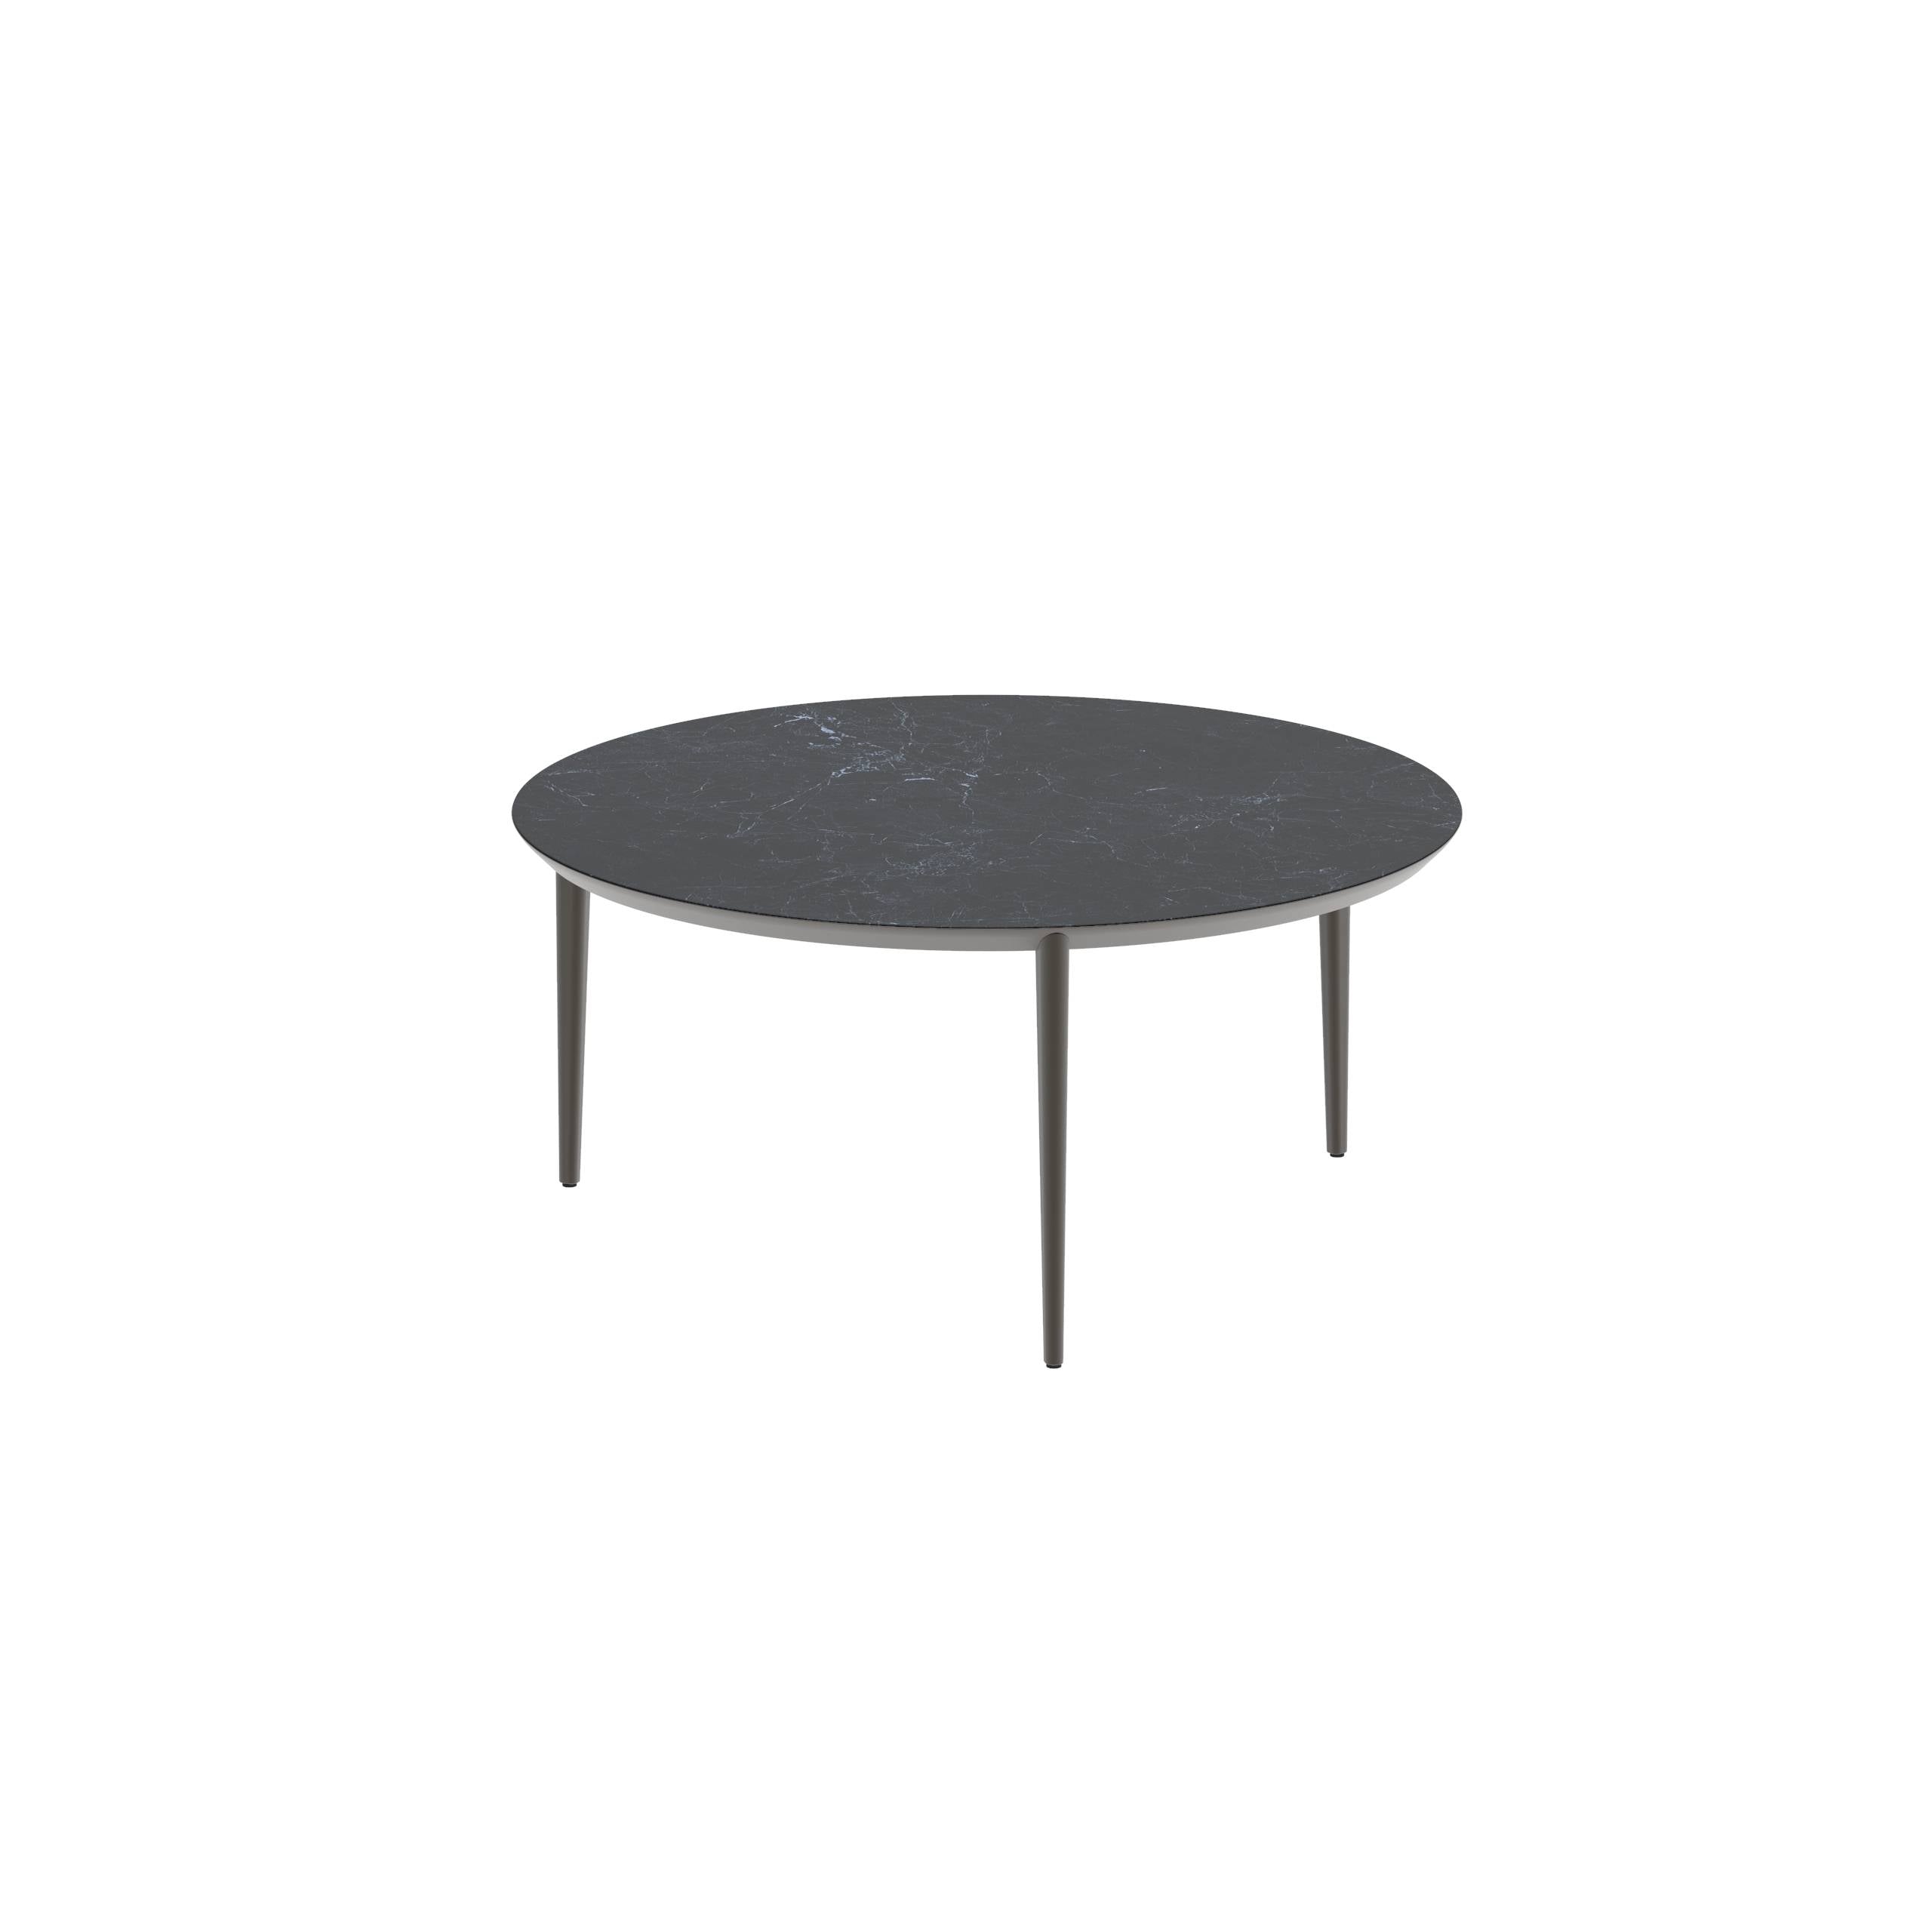 U-Nite Table Round Ø 160cm Alu Legs Bronze - Table Top Ceramic Nero Marquina